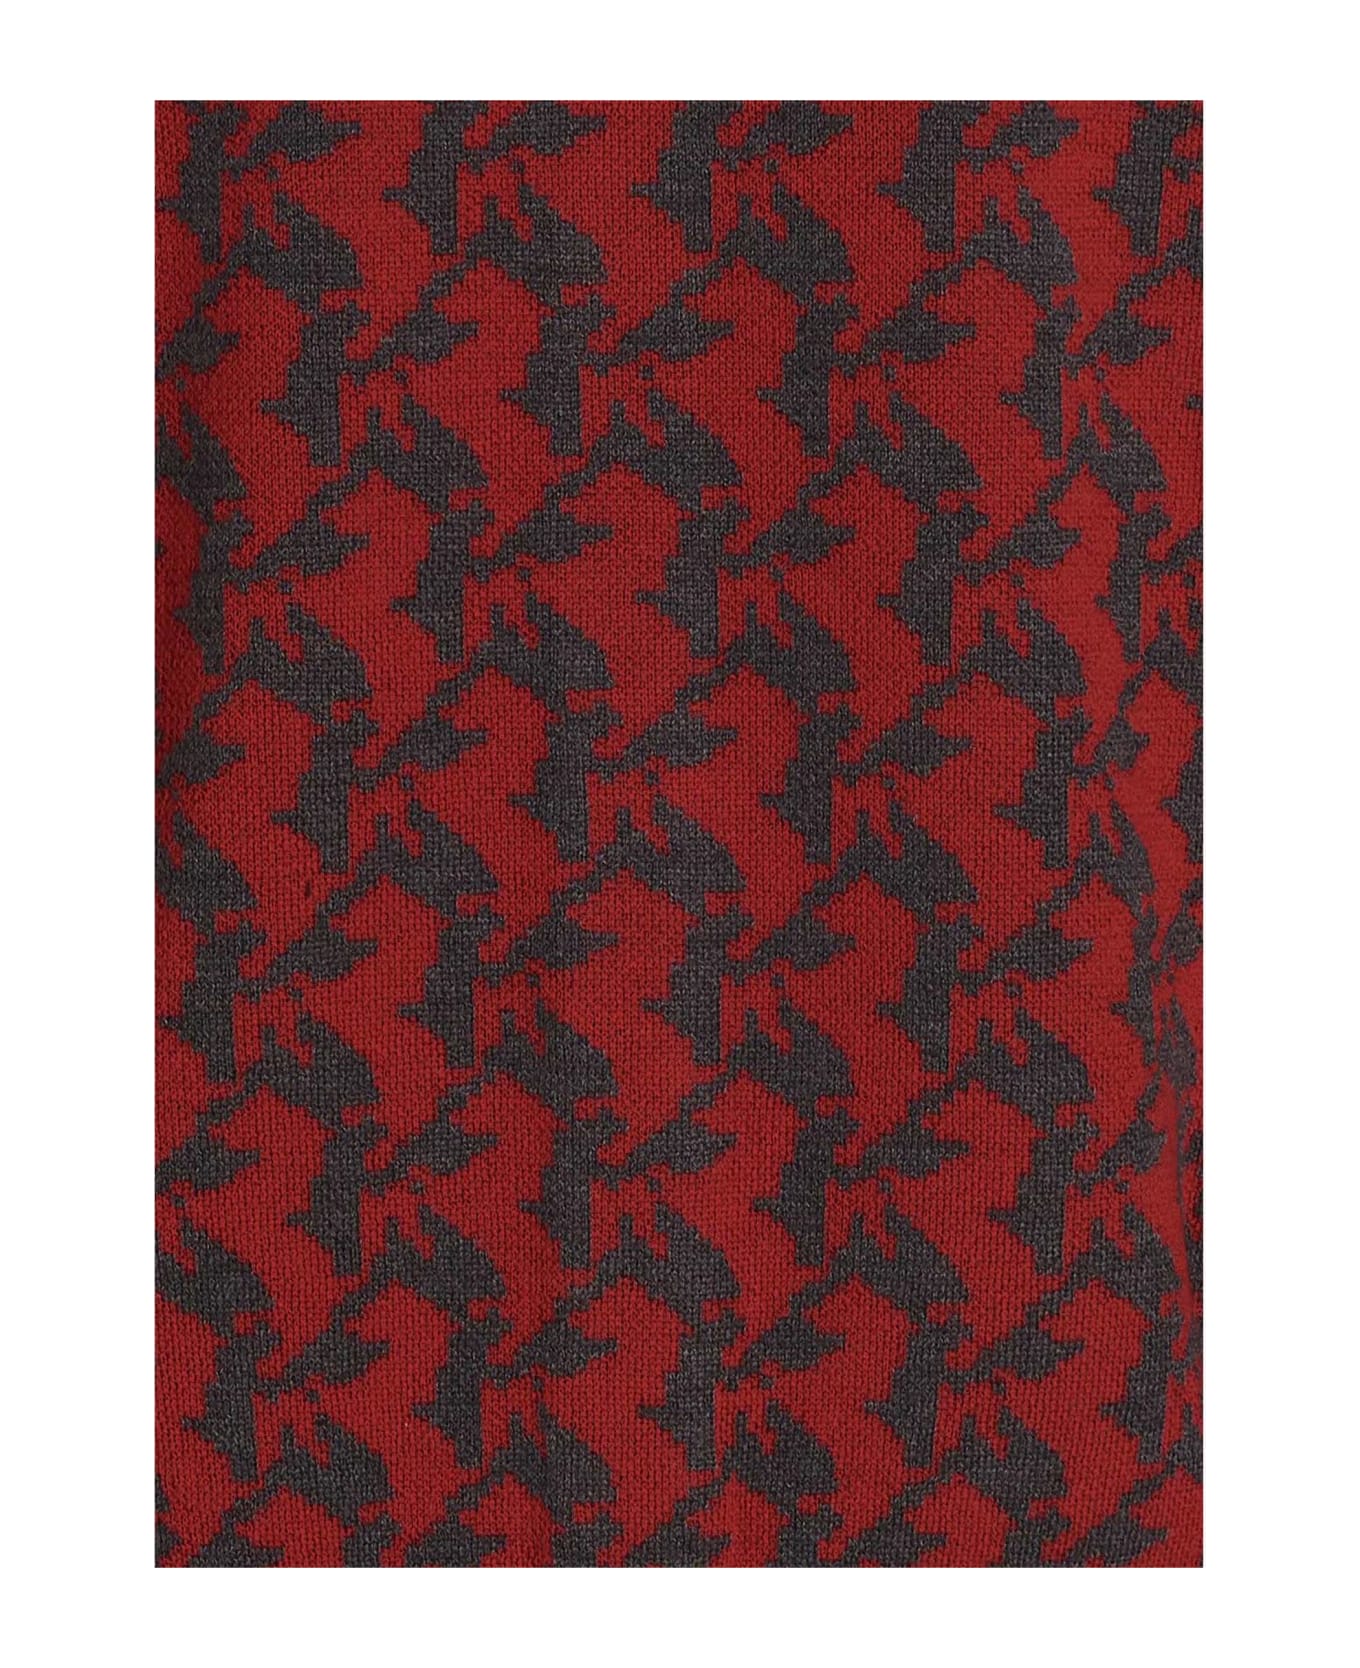 Ferrari 'cavallino' Cardigan - Red